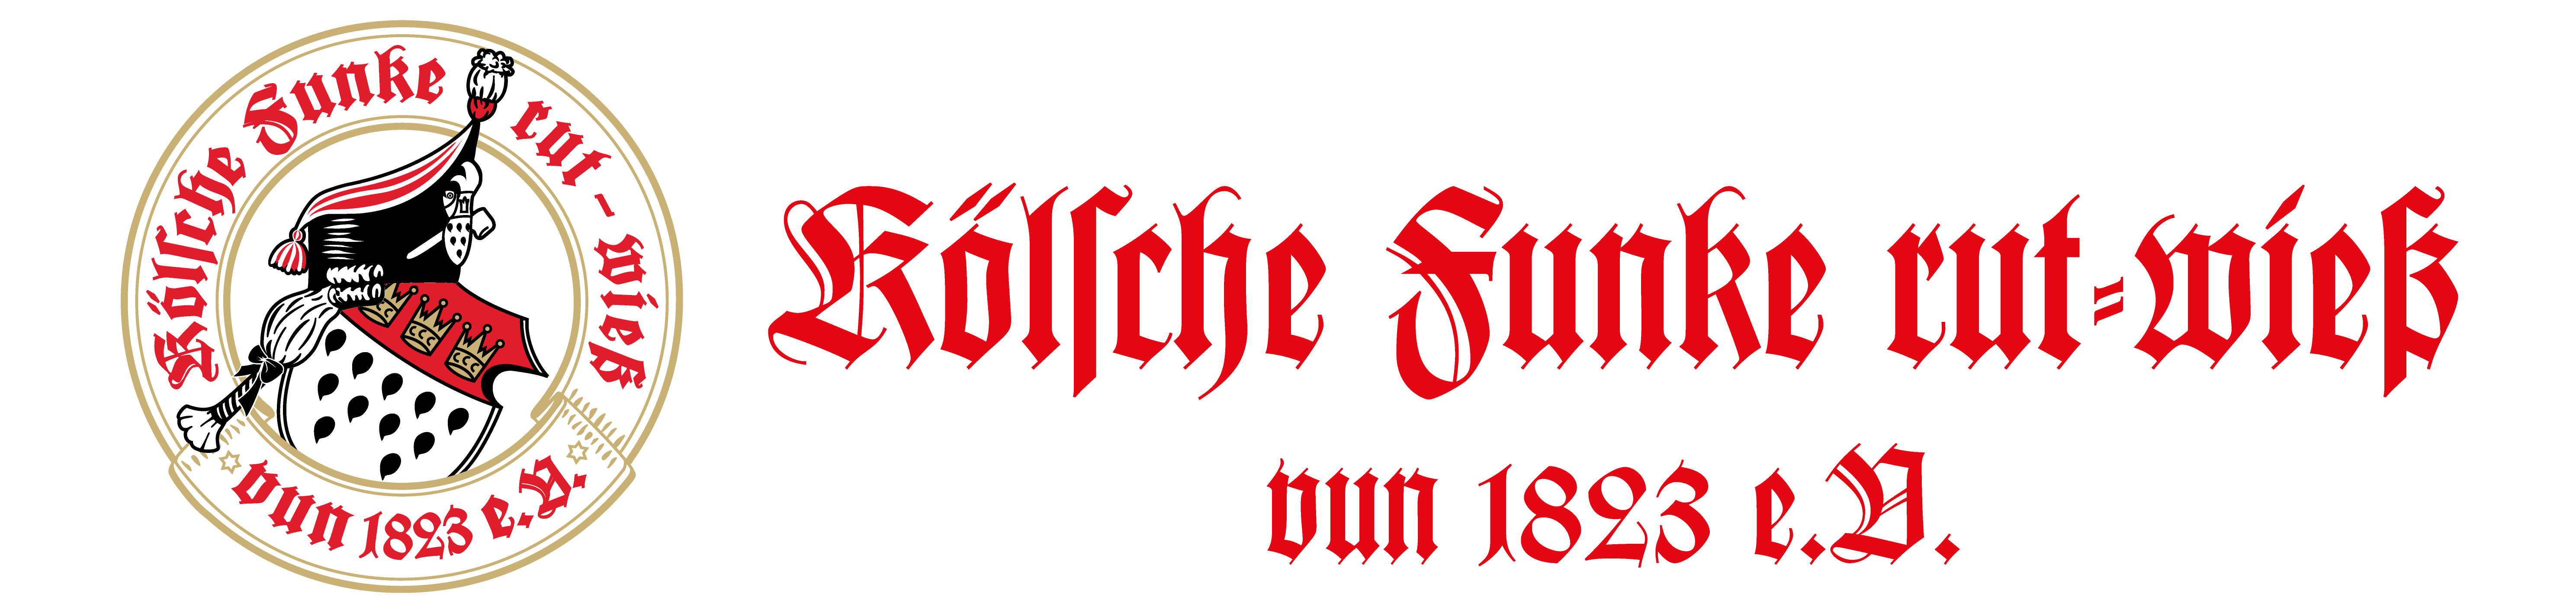 200. Geburtstag der Kölsche Funke rut-wieß vun 1823 e.V.